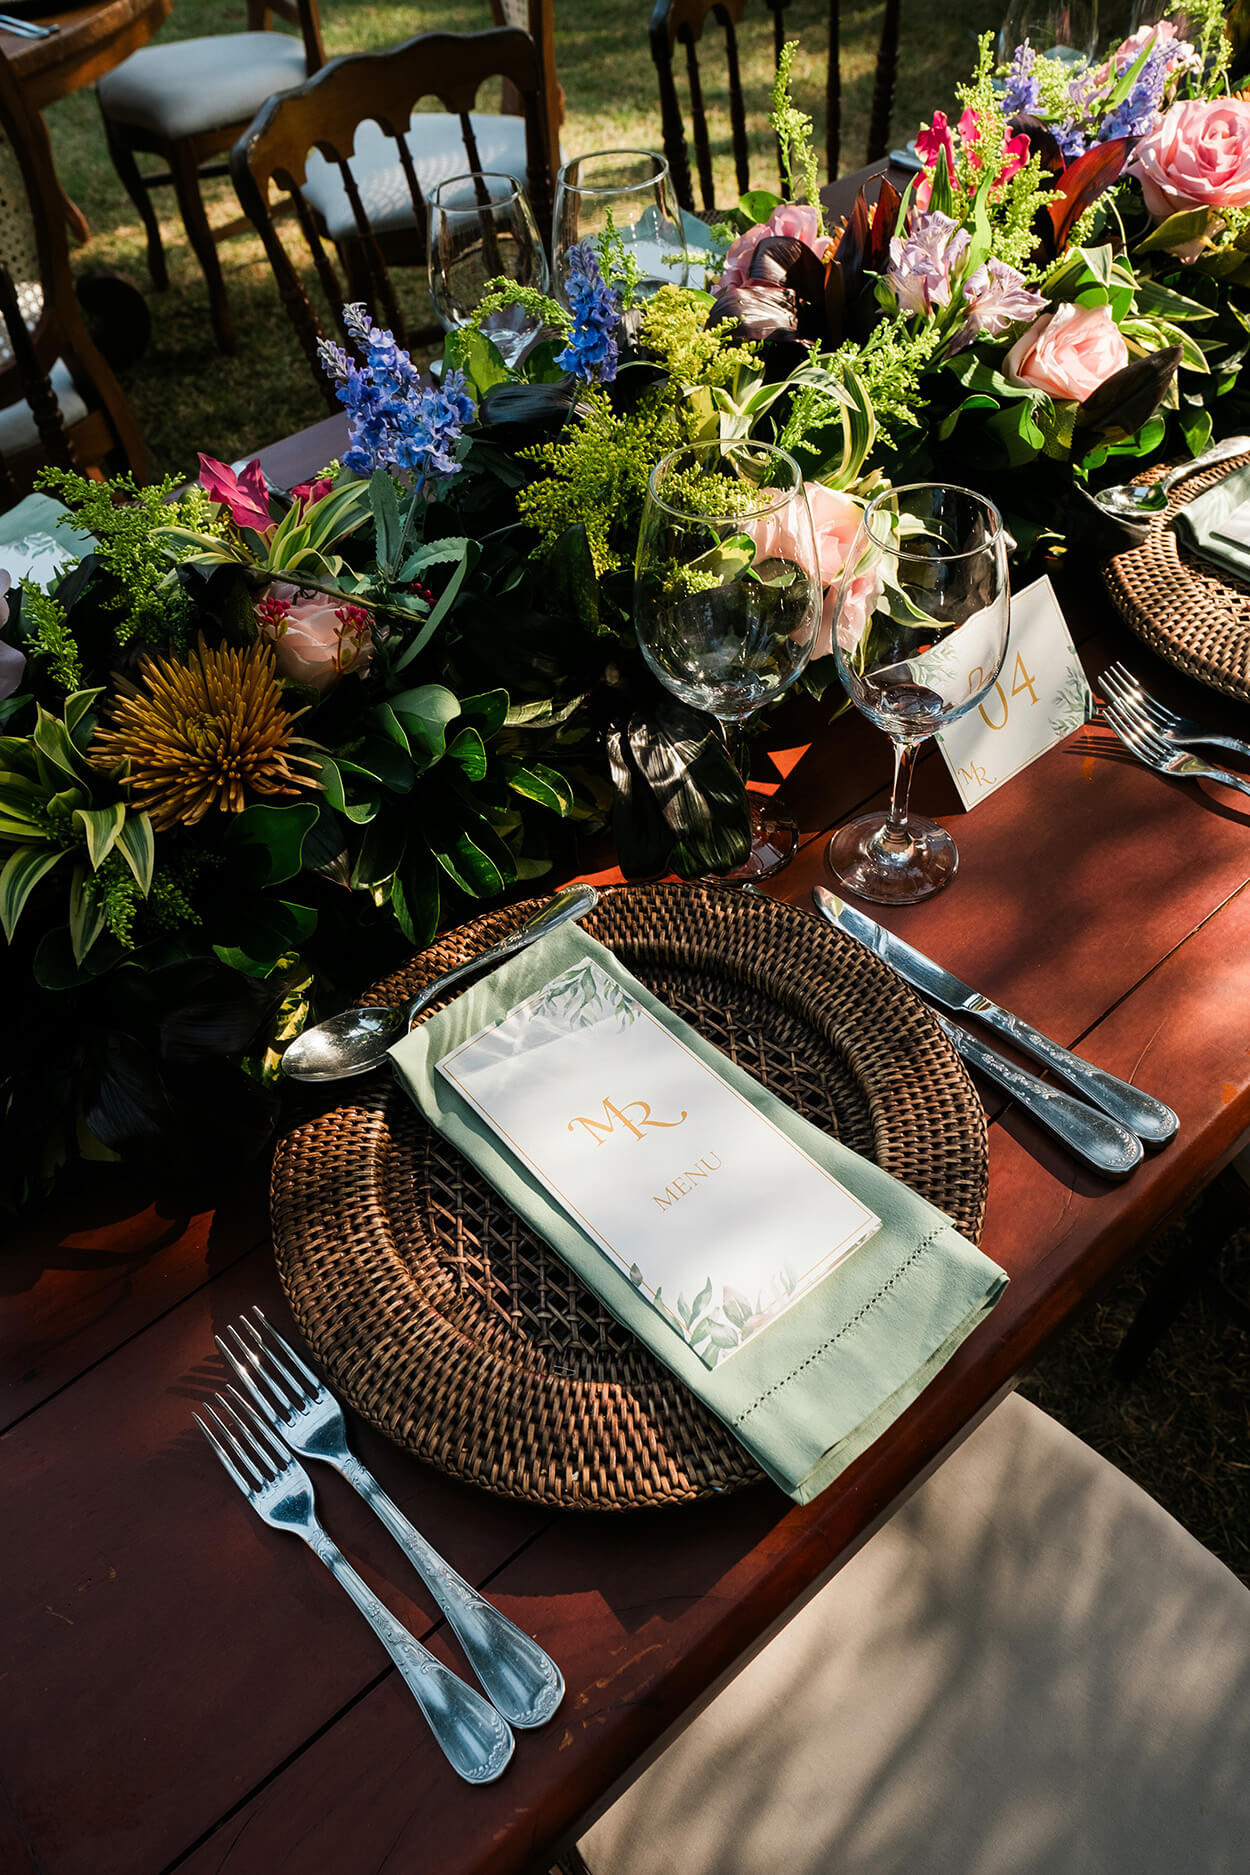 sousplat rústico com menu verde e branco e flores coloridas no centro da mesa